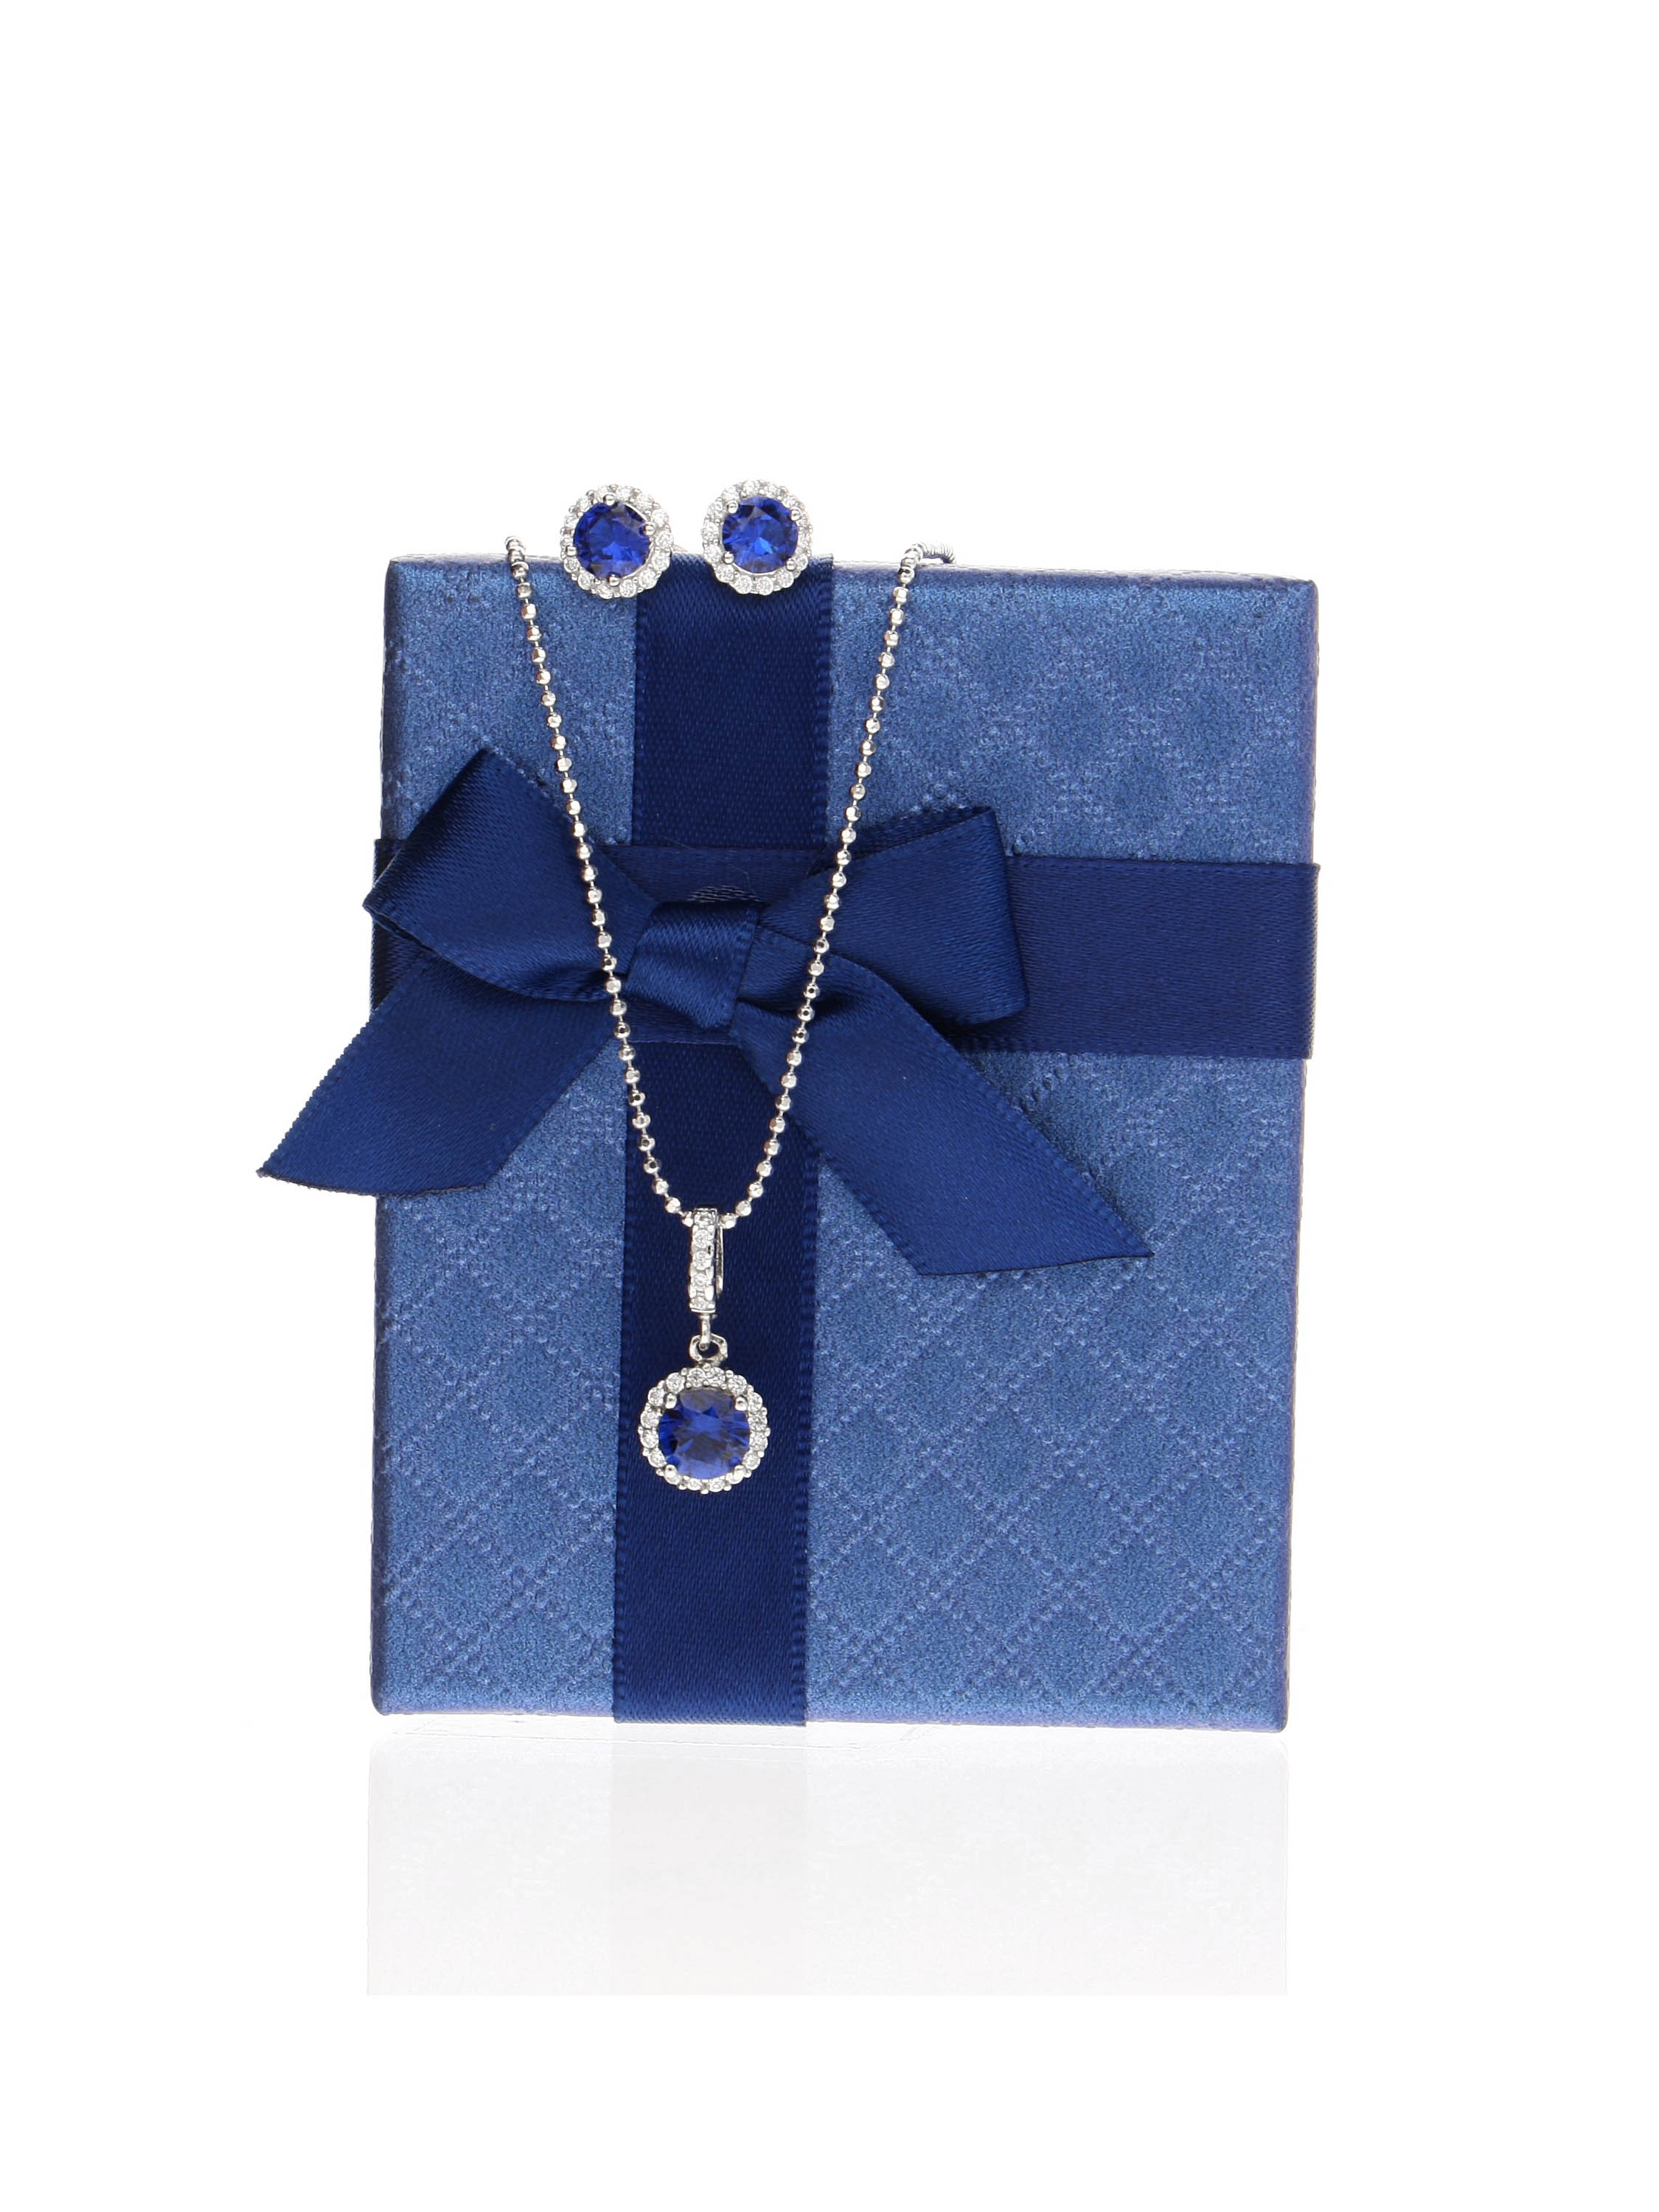 Blaue Geschenkschachtel mit schöner Satinschleife für das dunkelblaue Amazone Set | Verpackung